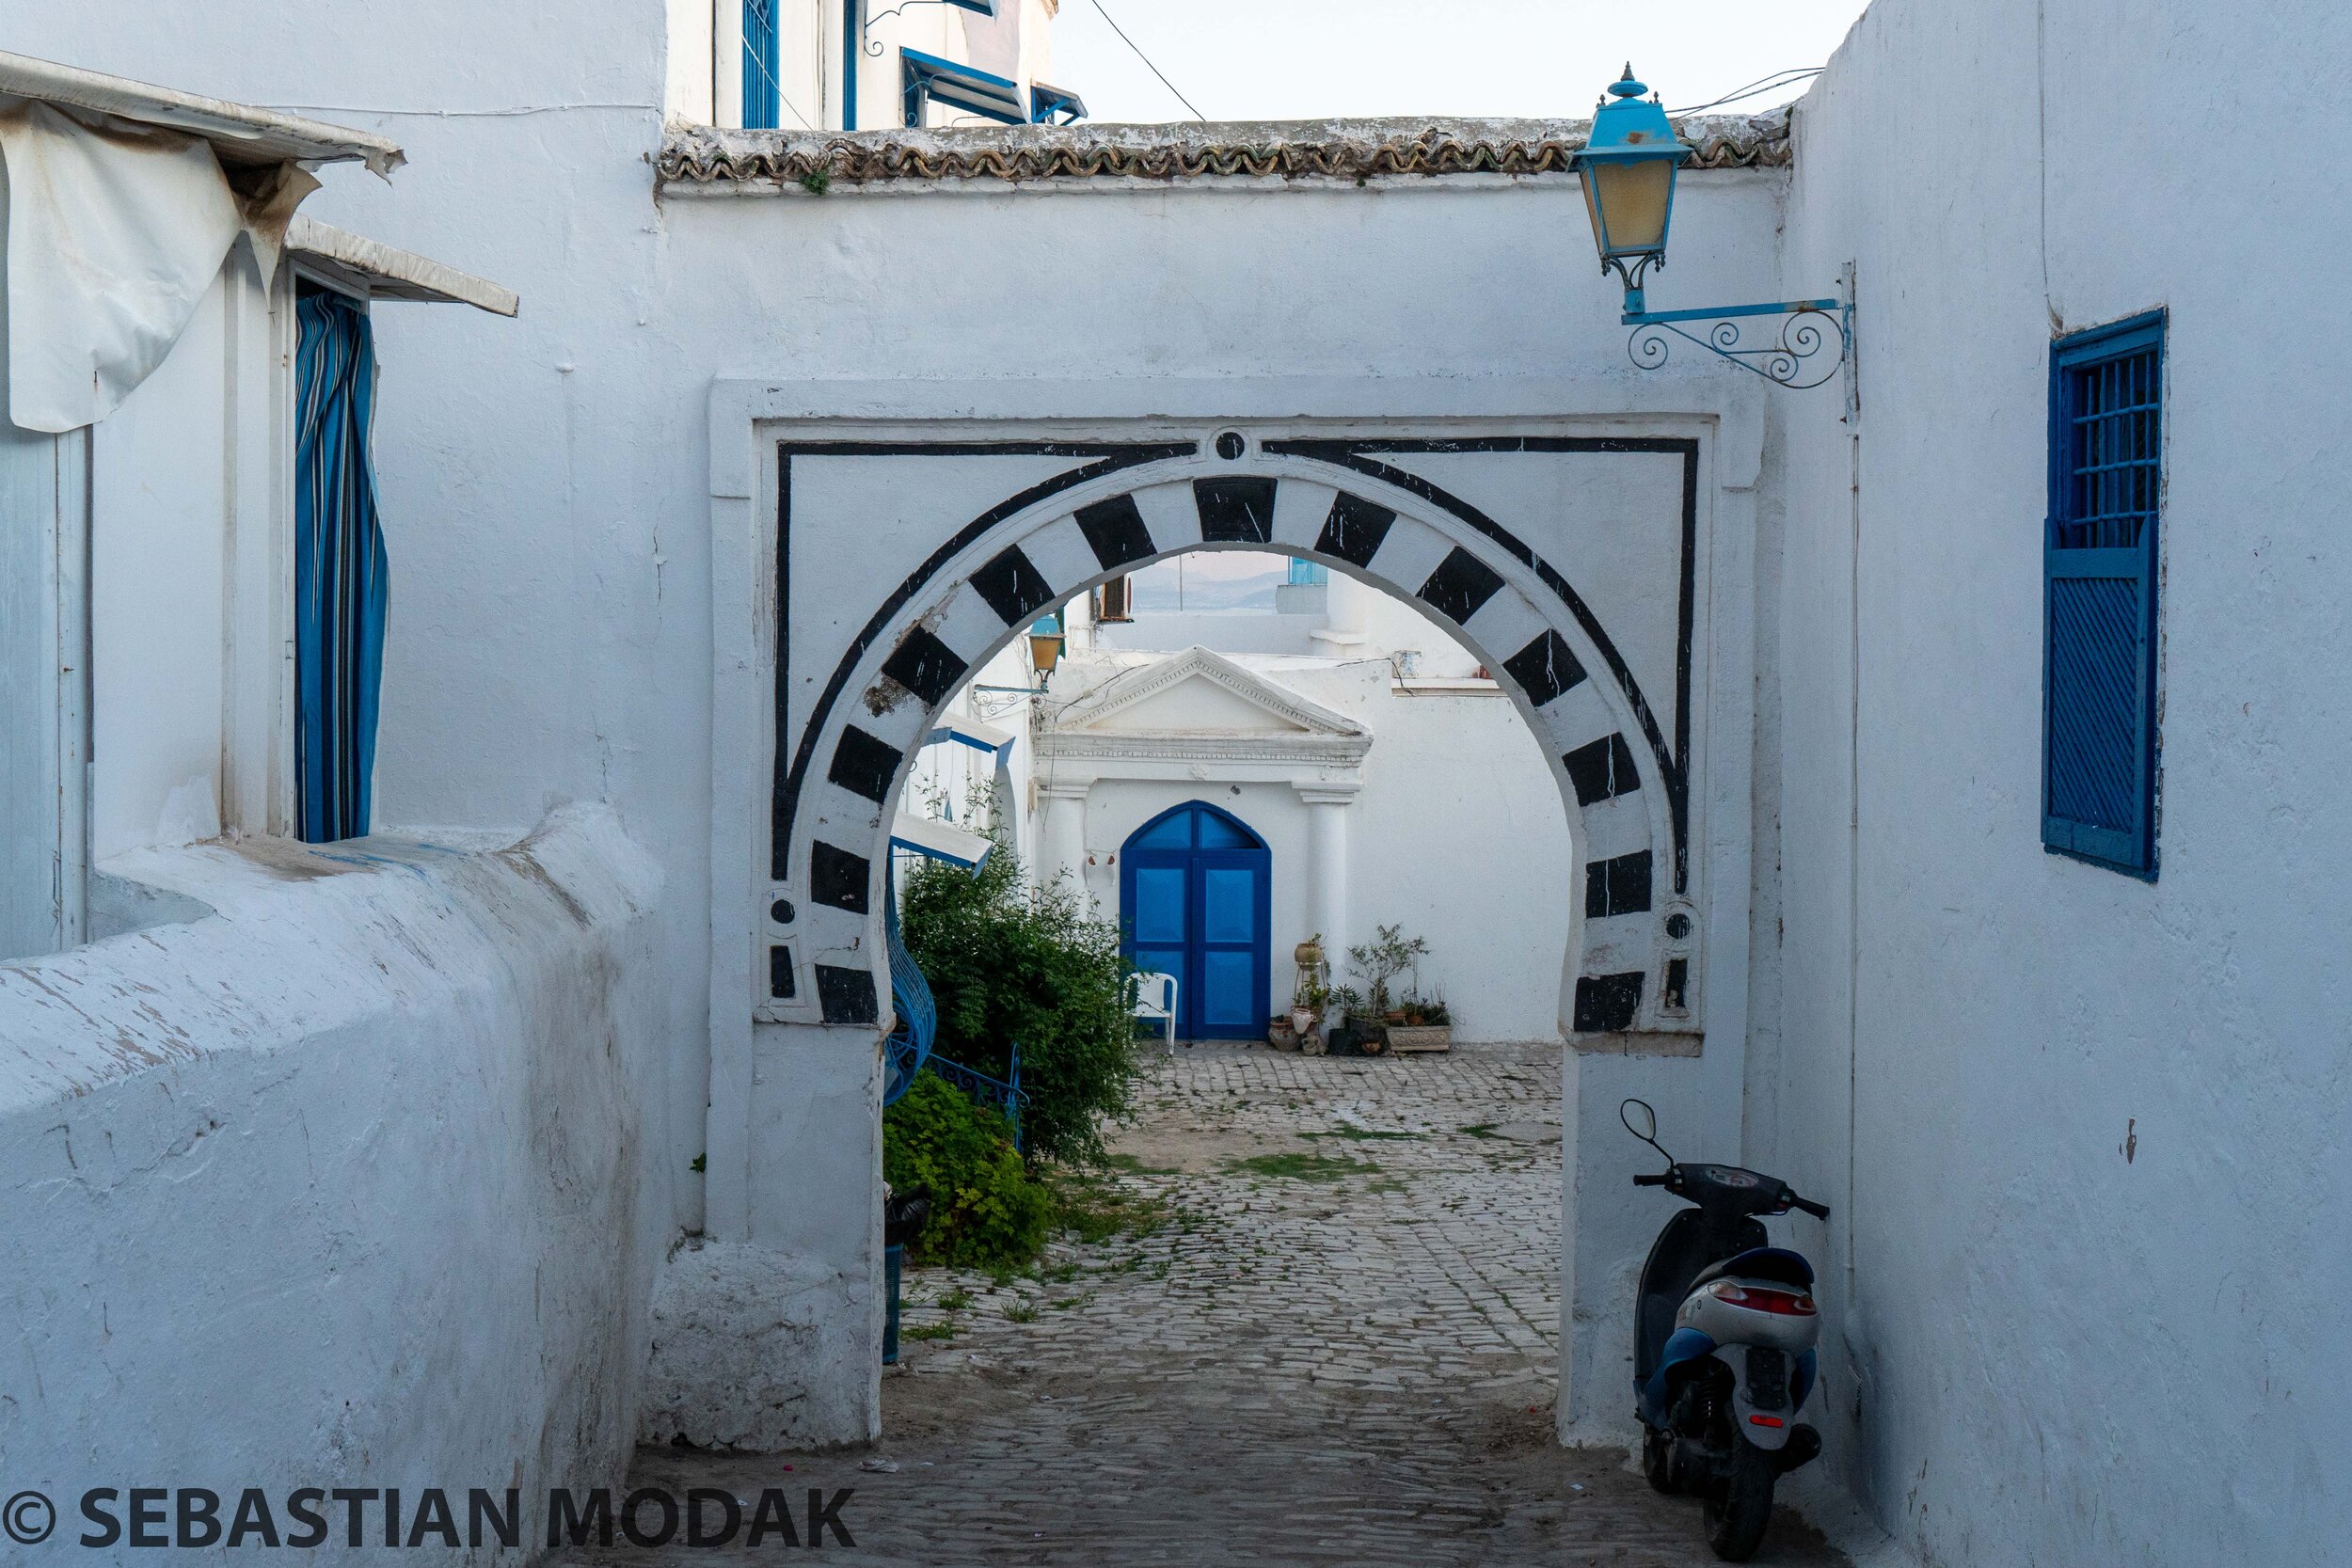  Sidi Bou Said, Tunisia 